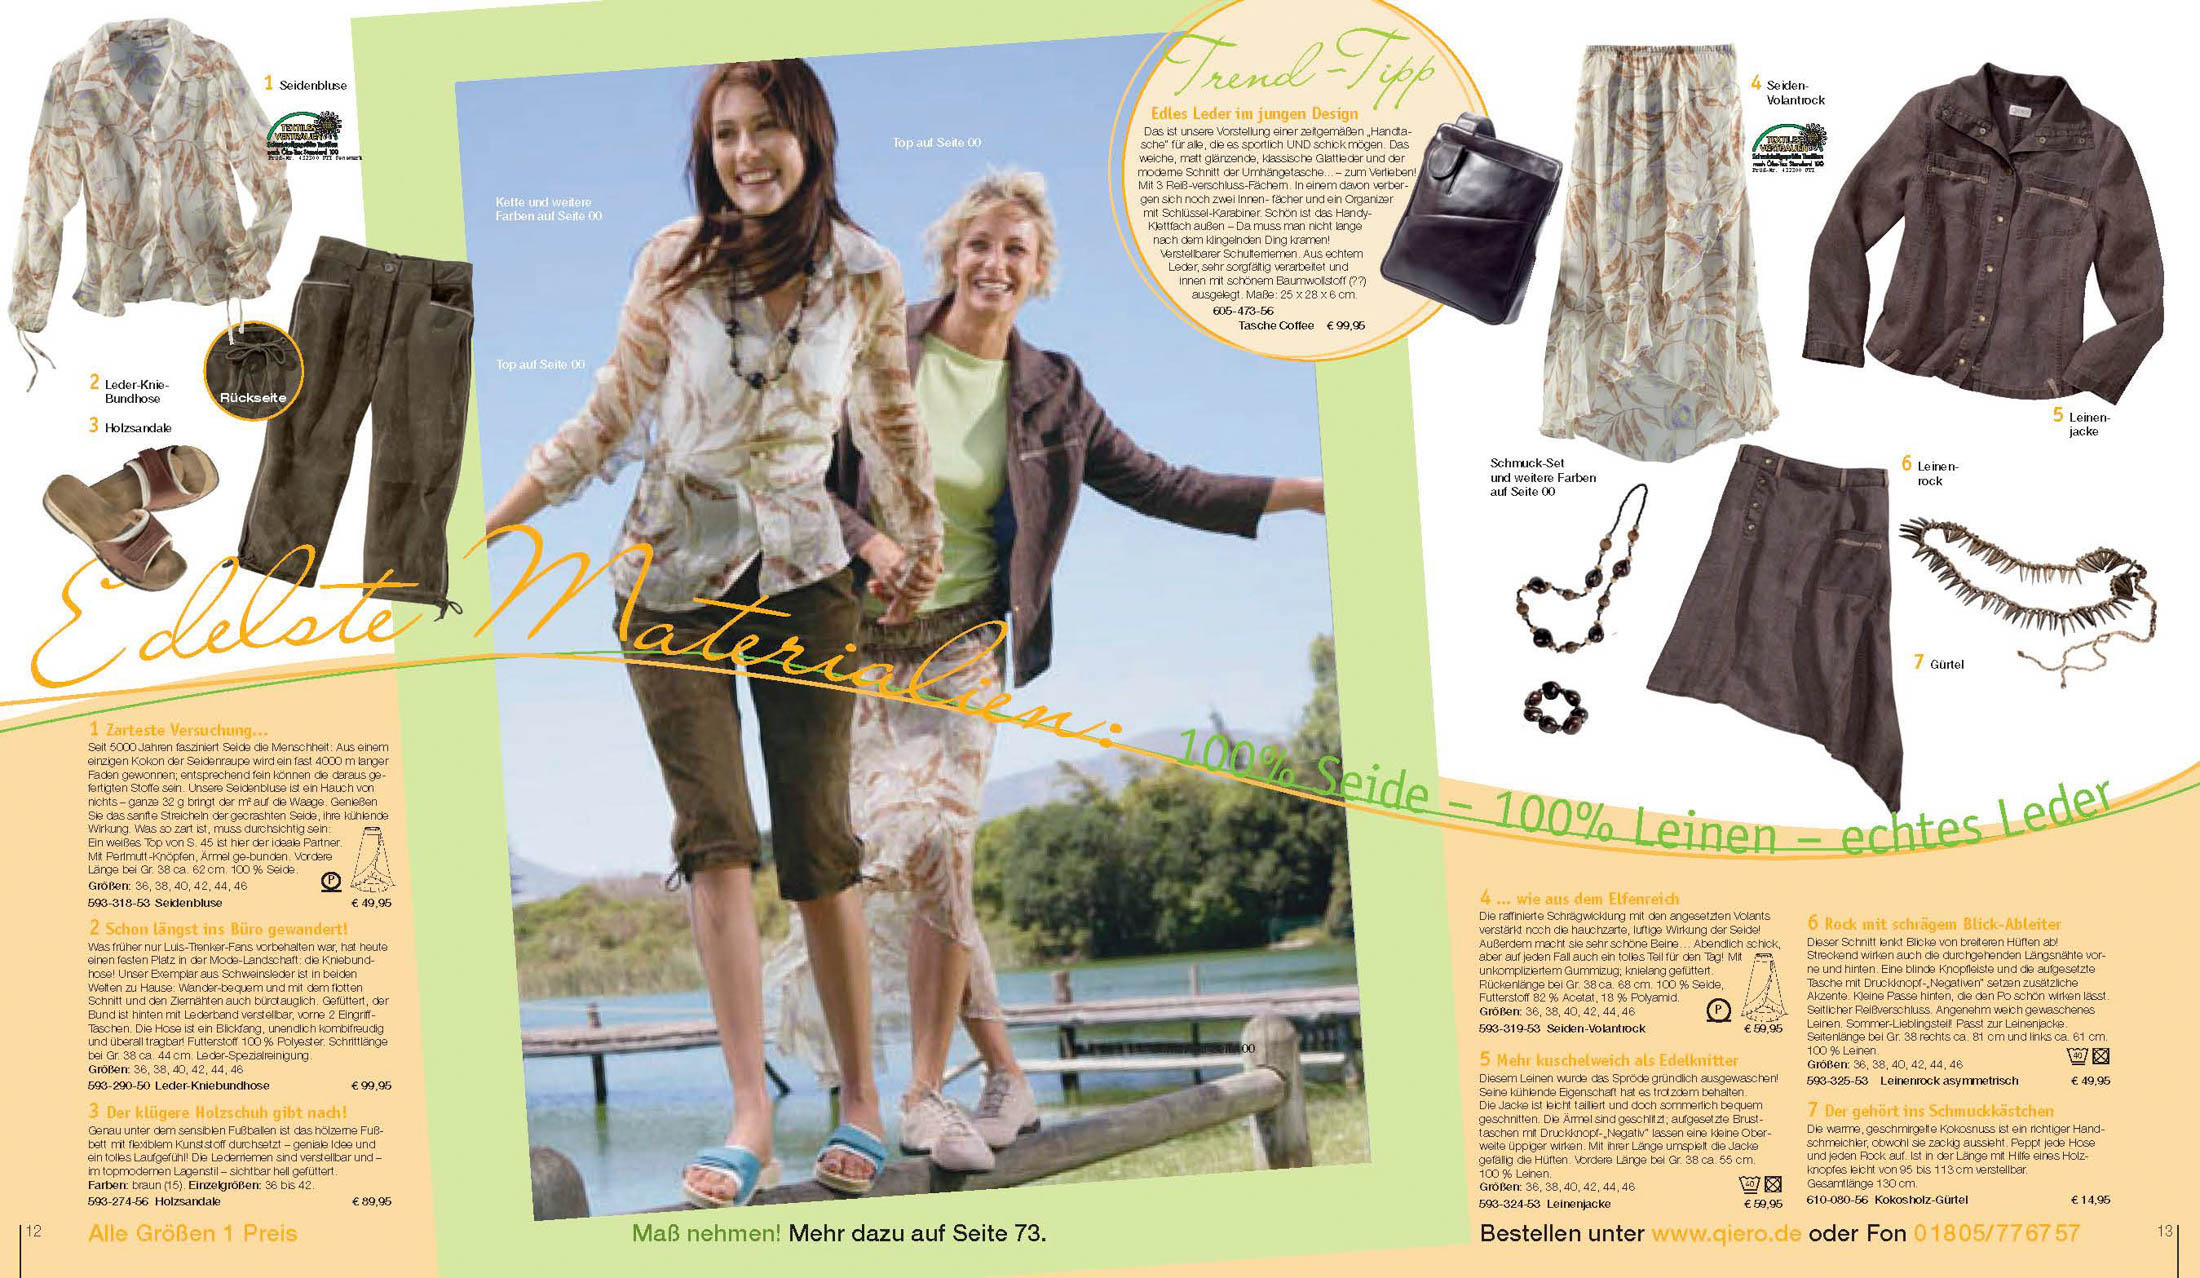 Eine Zeitschriftenstrecke mit Modeartikeln, auf der zwei Frauen lächelnd im Freien spazieren gehen, neben Bildern von Kleidung und Accessoires mit beschreibendem Text. © Fotografie Tomas Rodriguez